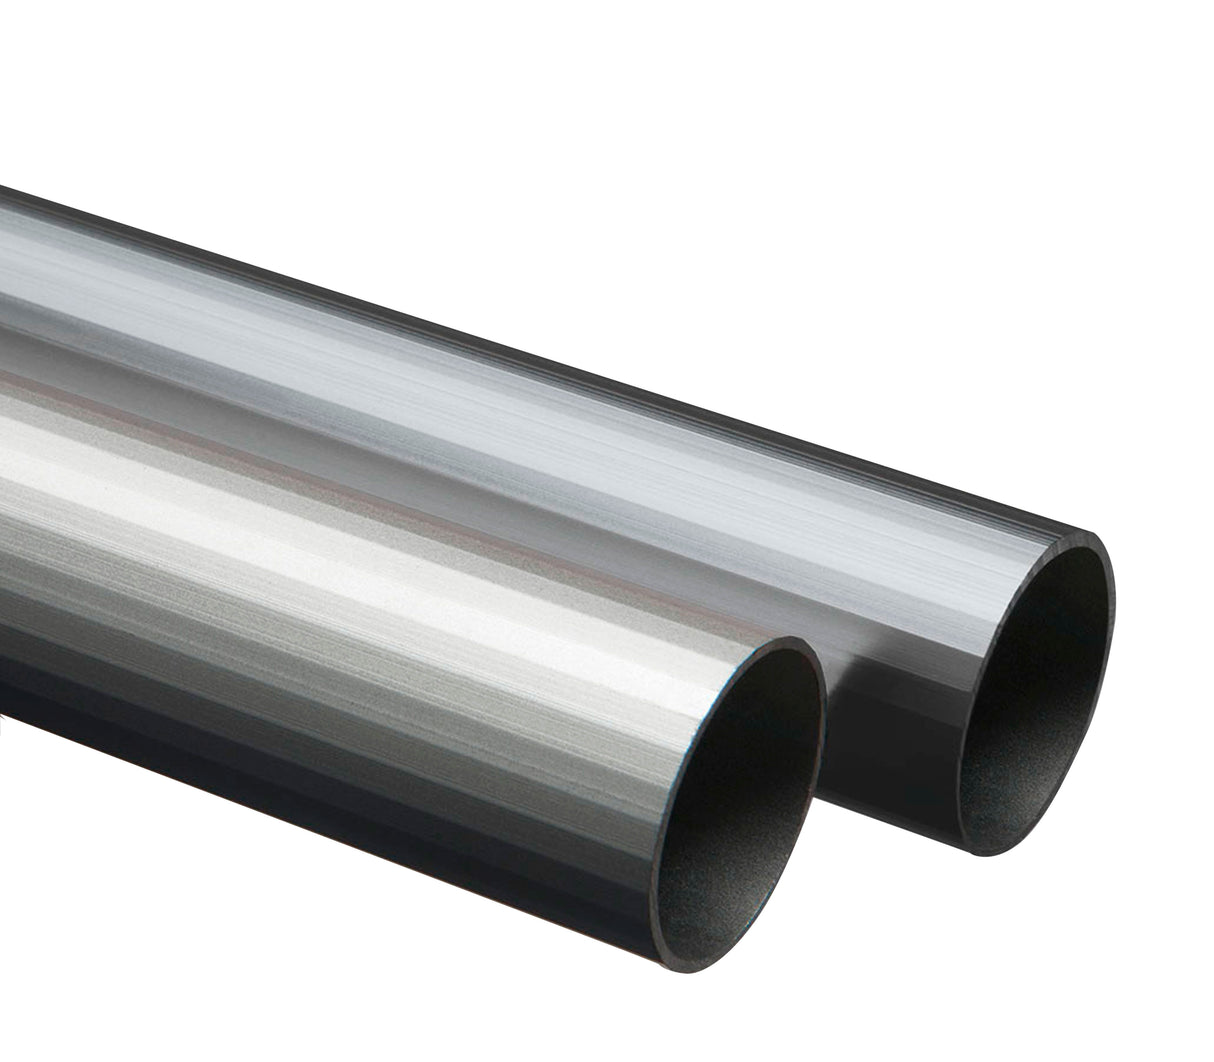 Tubo redondo de aluminio 13mm X 2m Tauro